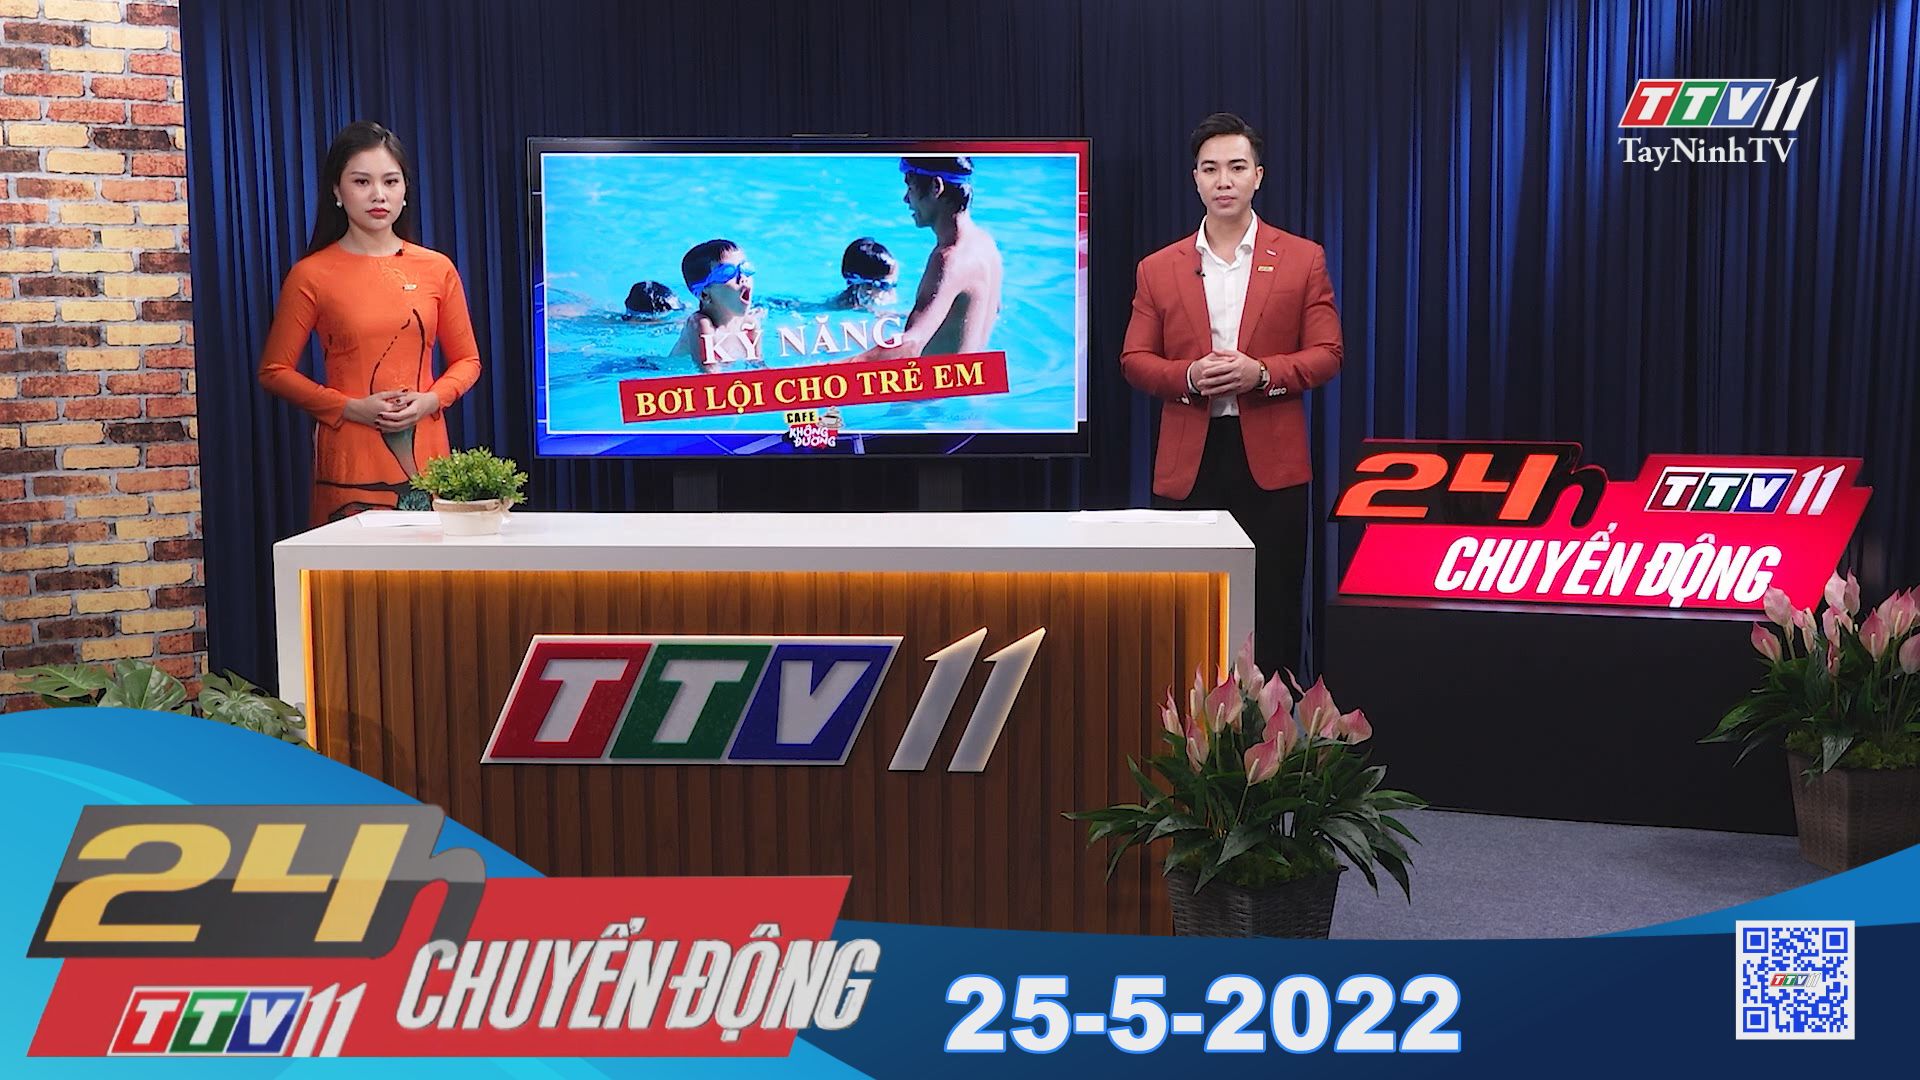 24h Chuyển động 25-5-2022 | Tin tức hôm nay | TayNinhTV